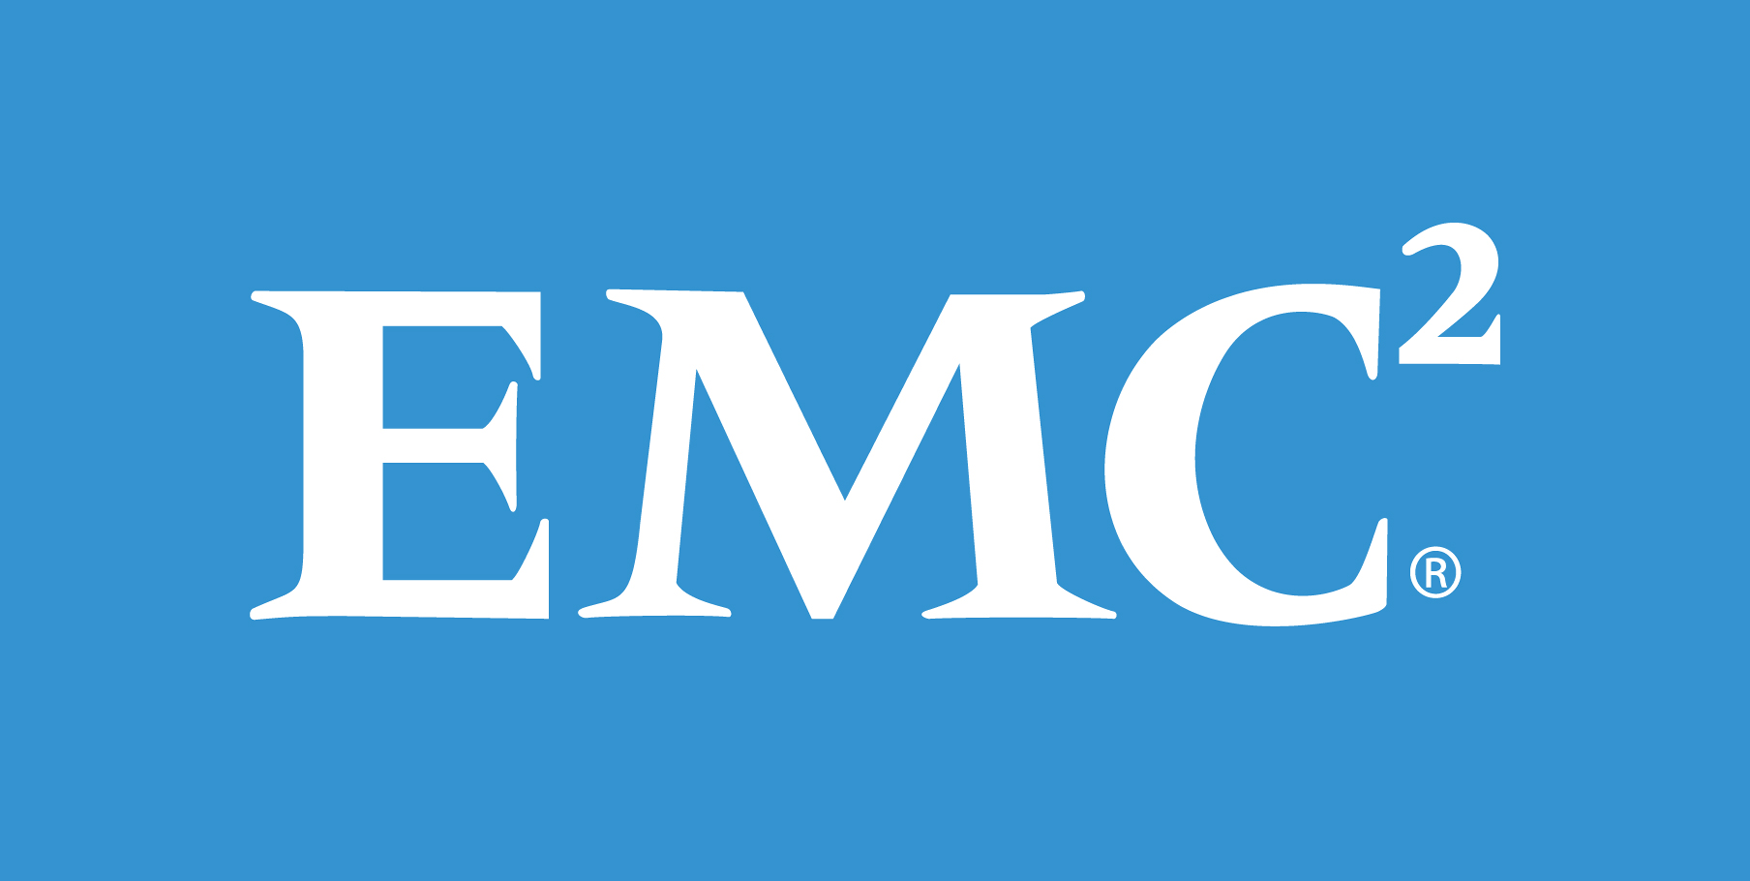 EMC Logo PNG Image